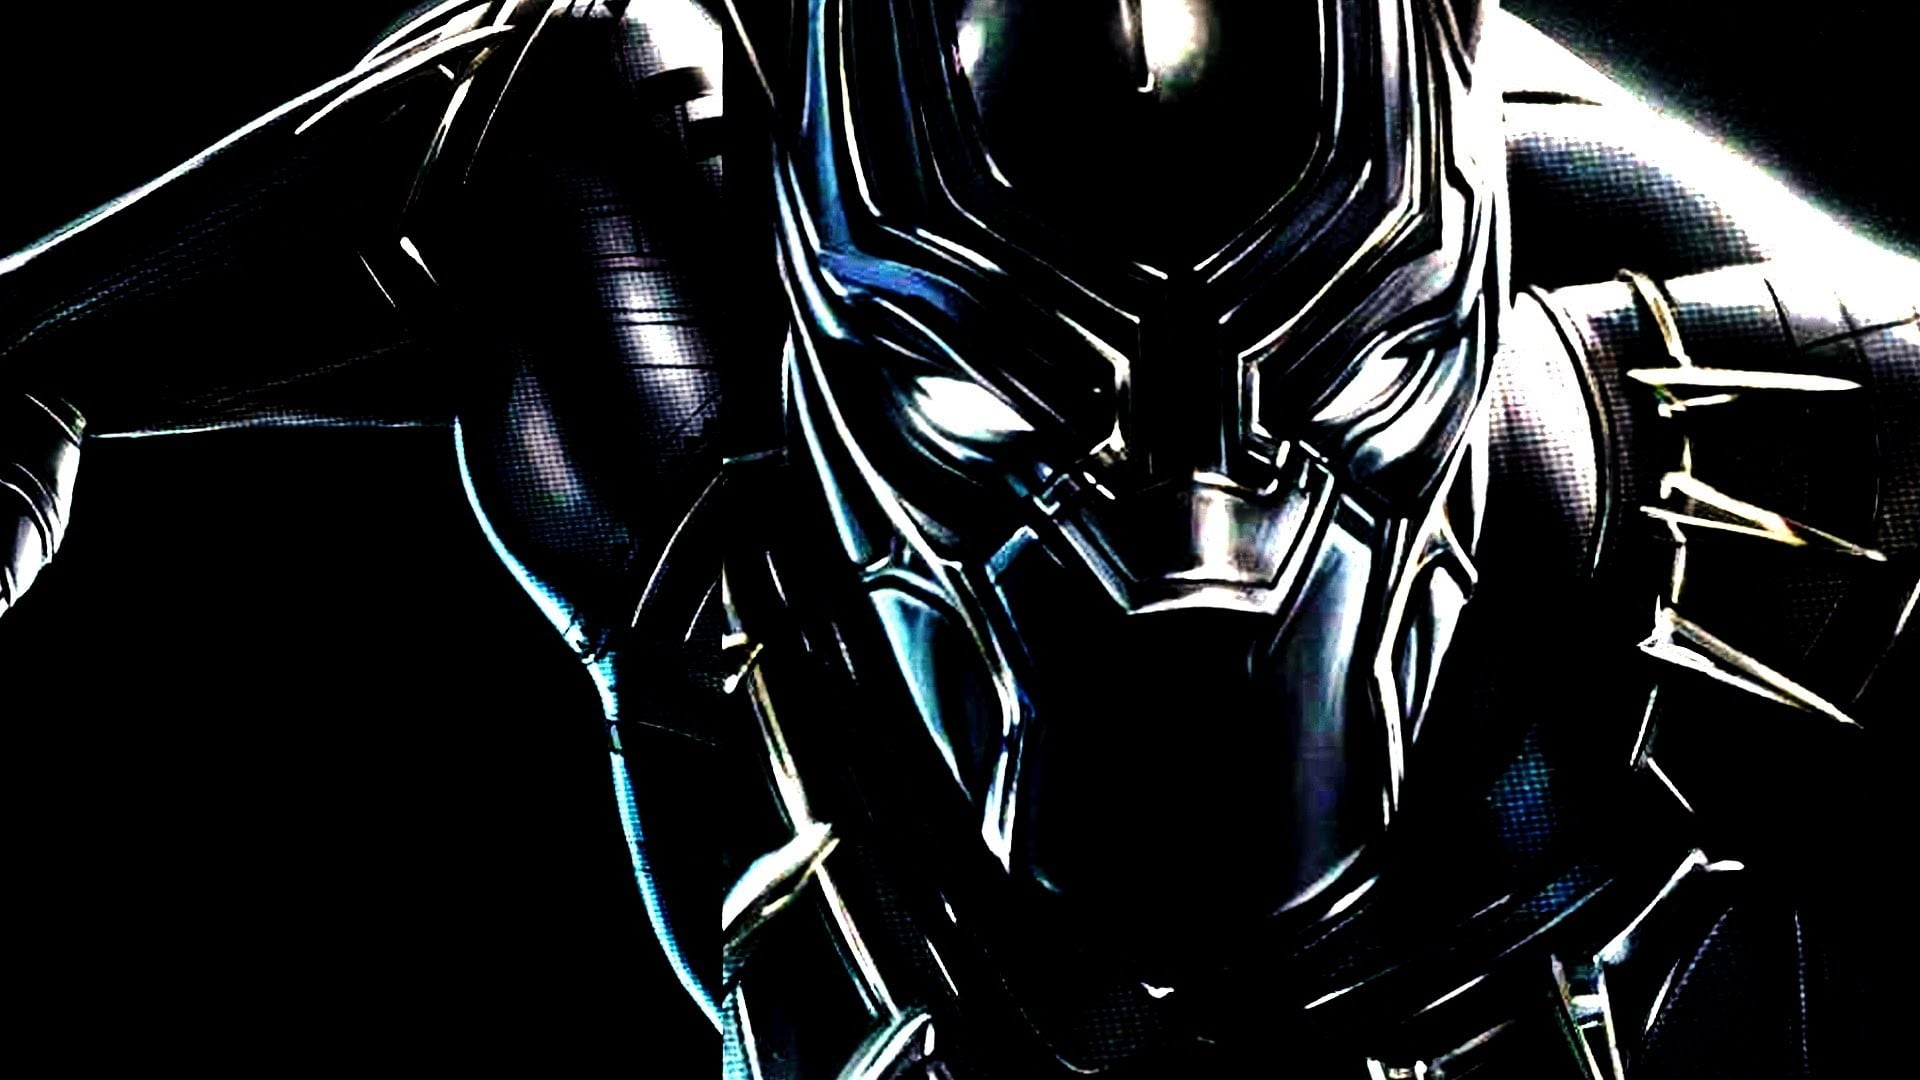 Marvel Black Panther digital wallpaper, warrior, Black Panther, Marvel Comics, Captain America: Civil War